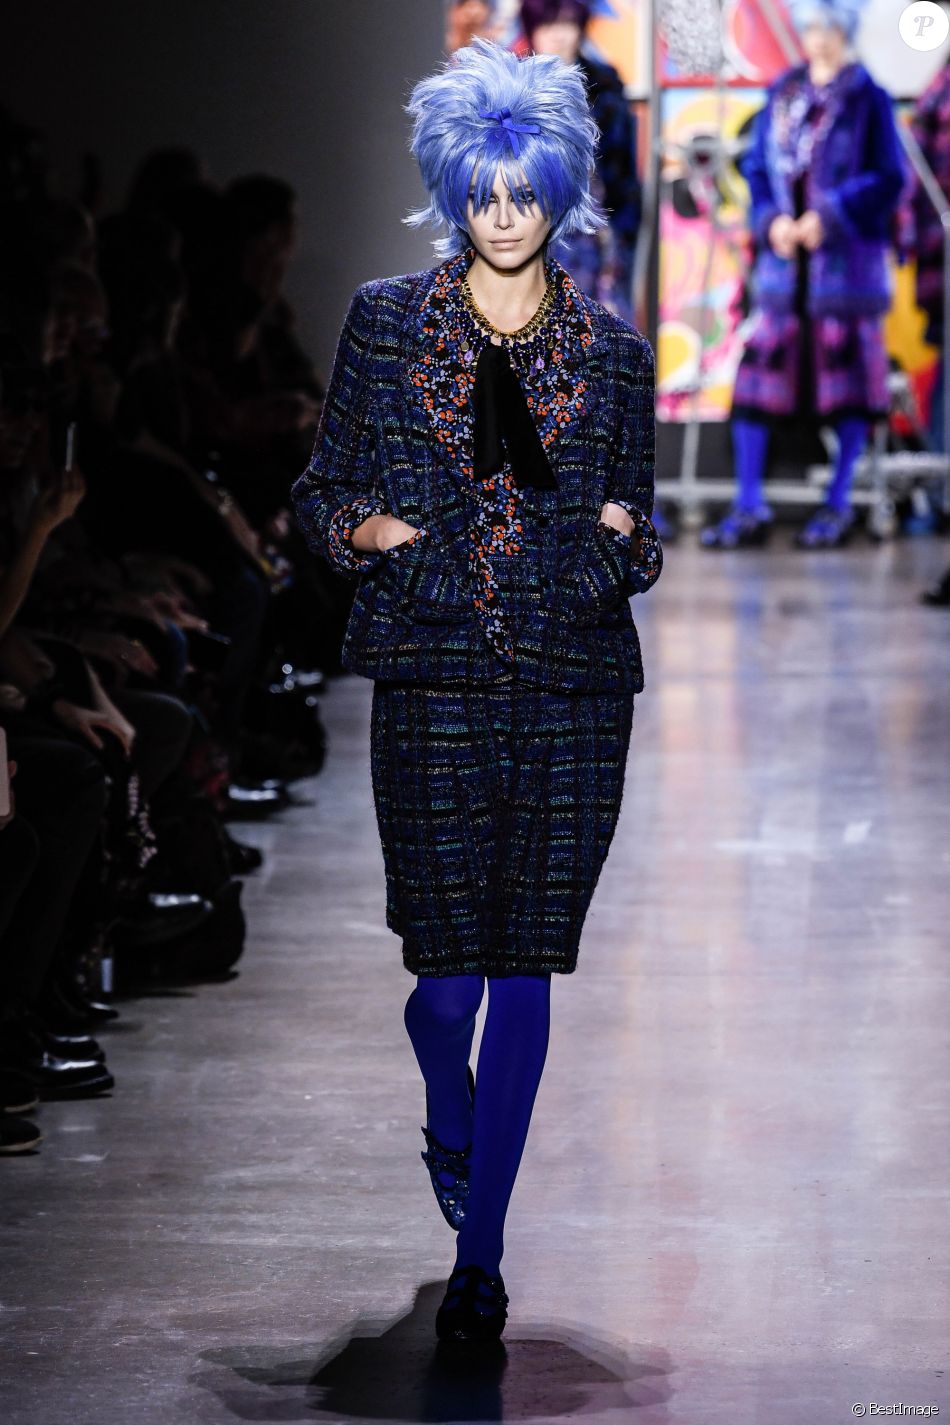 Kaia Gerber au dÃ©filÃ© Anna Sui lors de la Fashion Week automne-hiver 2019/2020 Ã  New York, le 11 fÃ©vrier 2019.